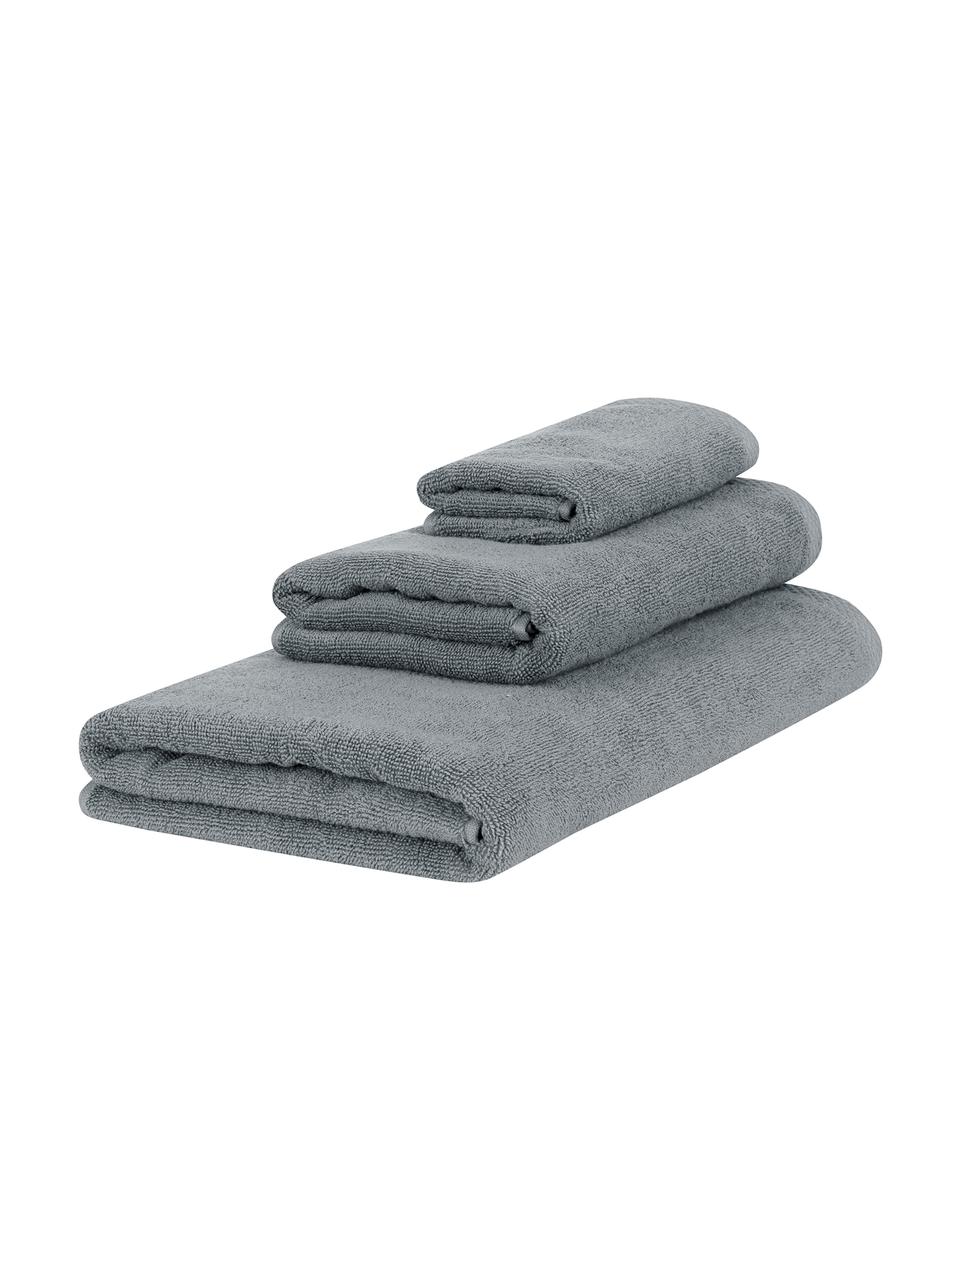 Súprava jednofarebných uterákov Comfort, 3 diely, 100 % bavlna
Stredná gramáž 450 g/m², Tmavosivá, Súprava s rôznymi veľkosťami